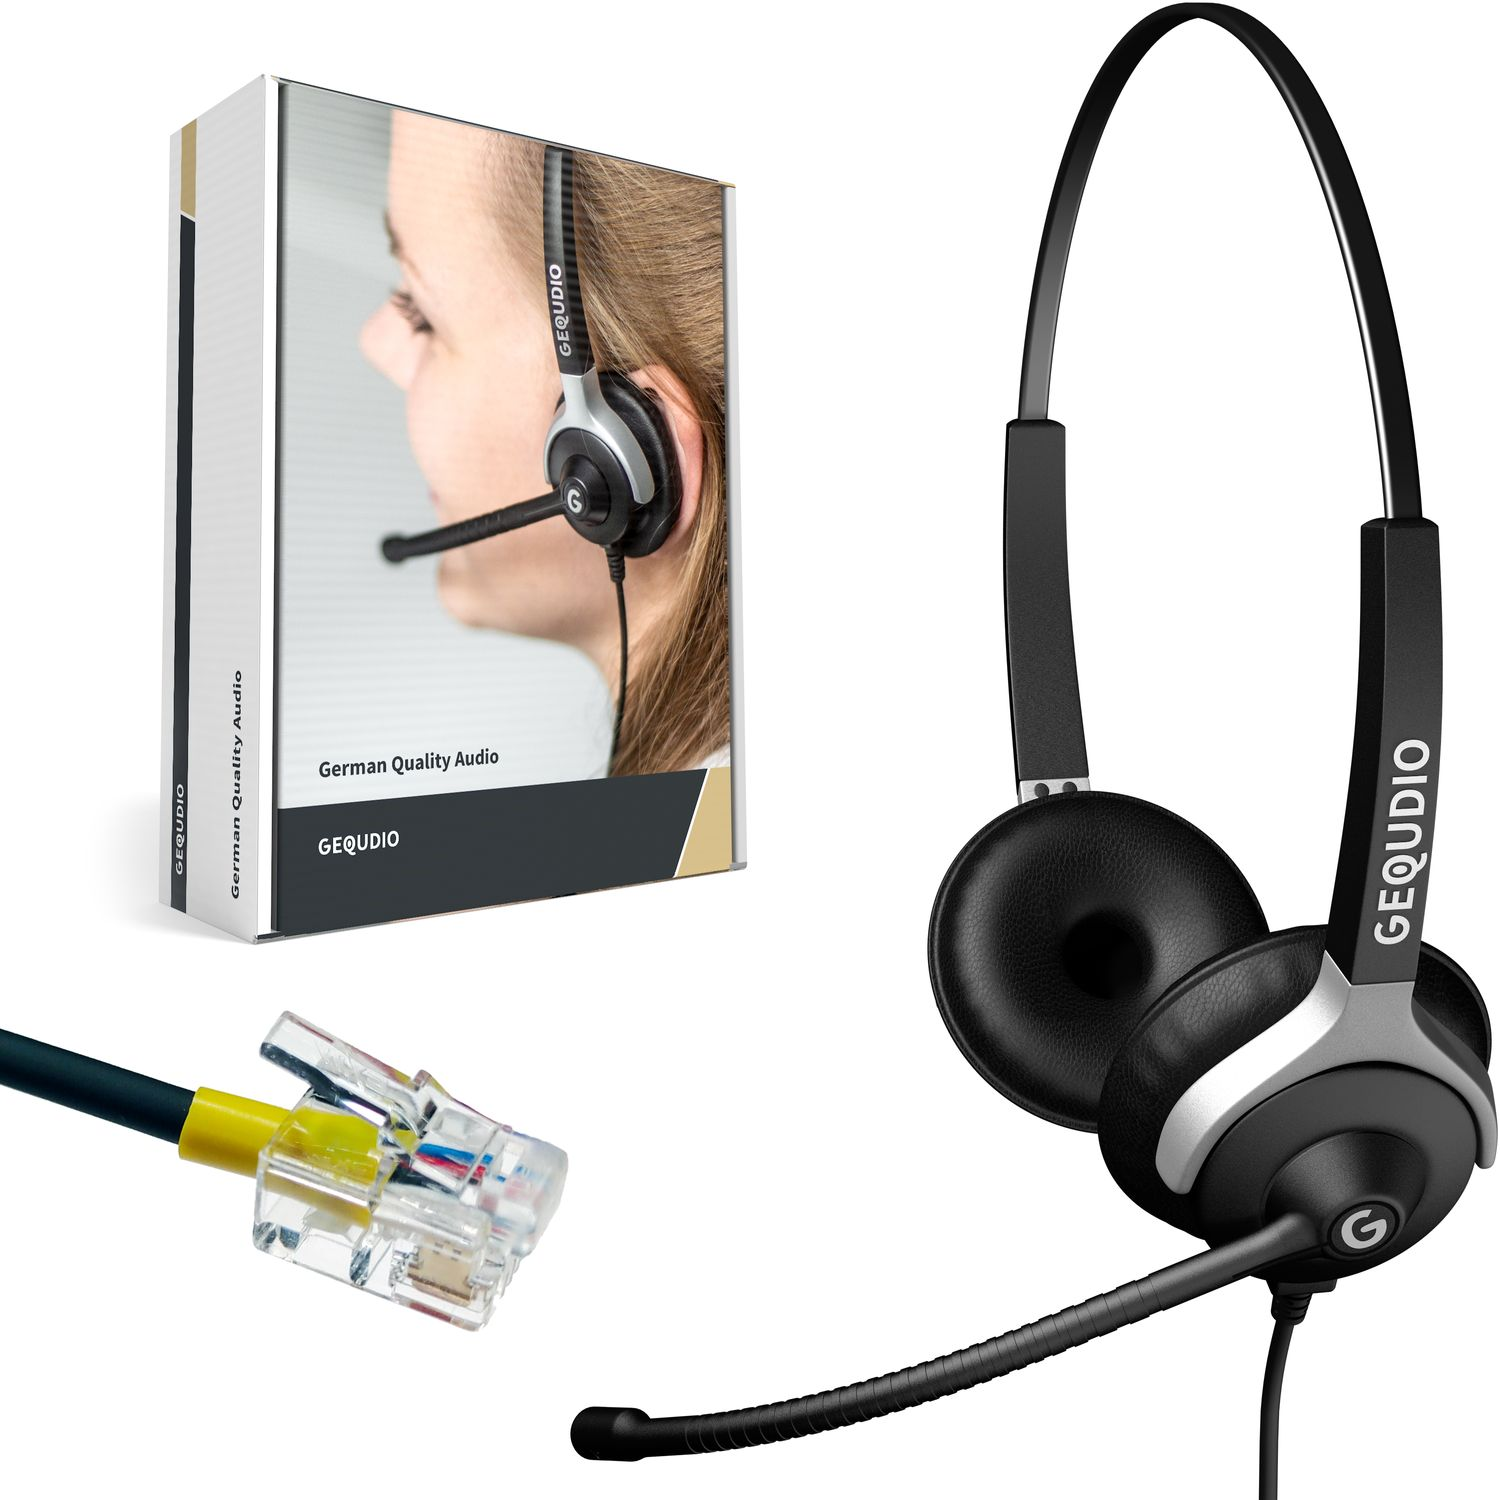 für 2-Ohr Kabel, Schwarz Headset GEQUDIO On-ear Headset mit Mitel/Aastra/Poly/Gigaset-RJ